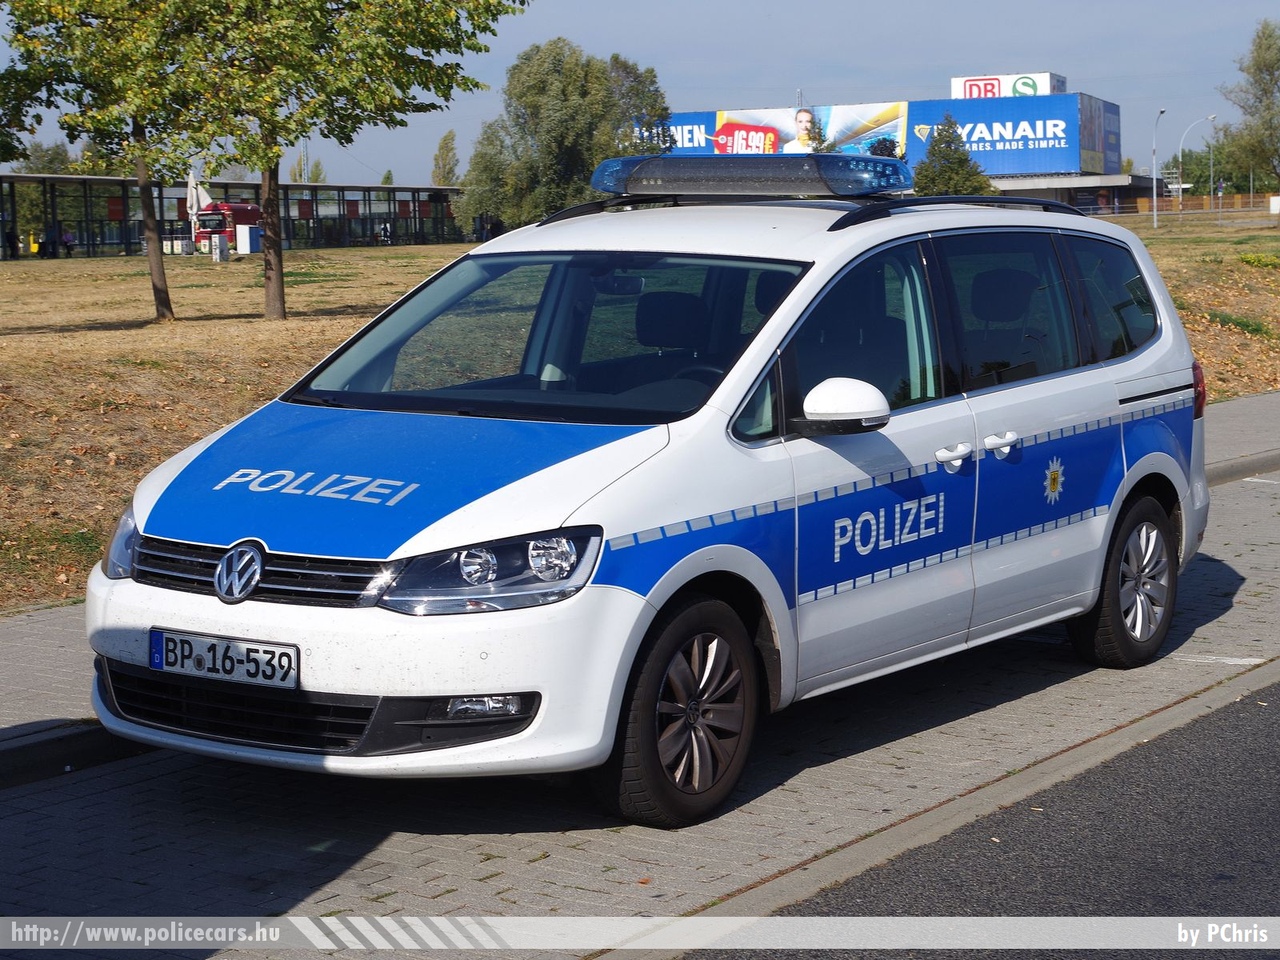 Volkswagen Sharan, fotó: PChris
Keywords: német Németország rendőr rendőrautó rendőrség german Germany police policecar